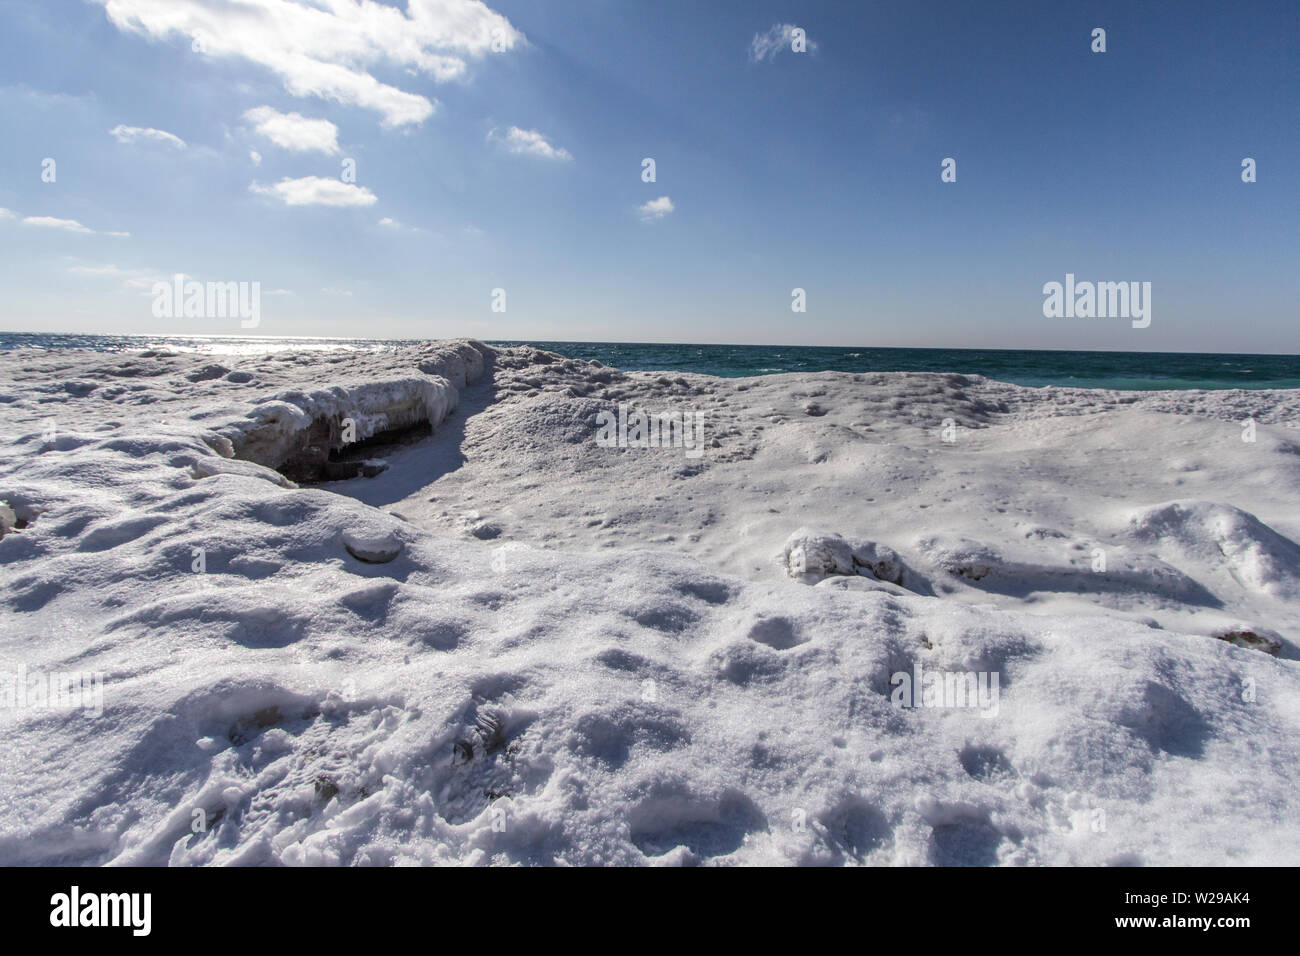 Día de invierno en la playa. Banco de nieve y hielo amontonadas en la costa del Lago Michigan en Sleeping Bear Dunes National Lakeshore en Michigan. Foto de stock